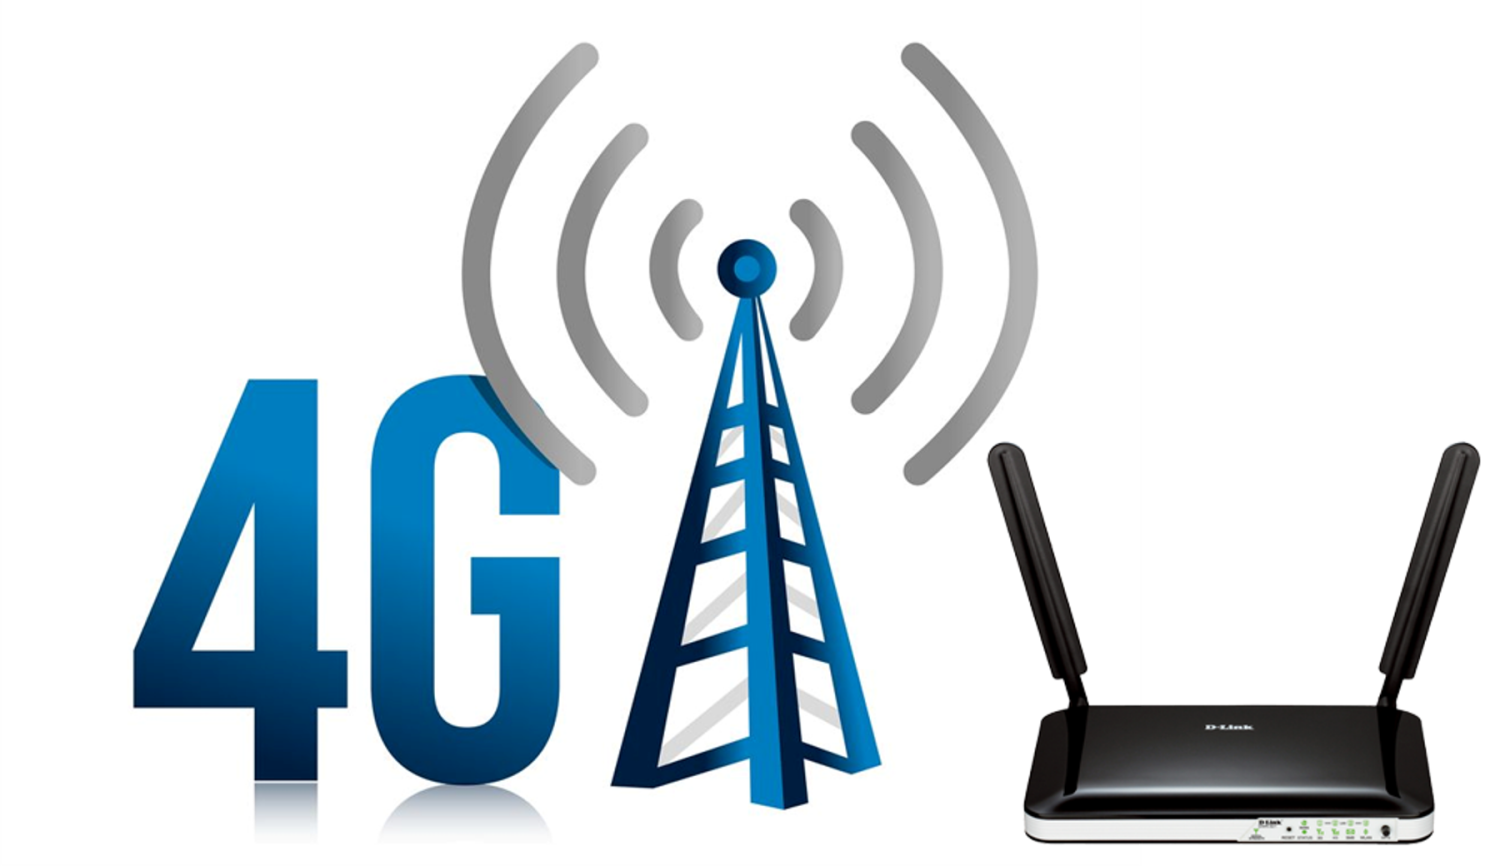 Беспроводной интернет телефон. Сети сотовой связи 4g. 4g LTE. 3g 4g LTE device. Мобильная сеть 4g (WIMAX va LTE).